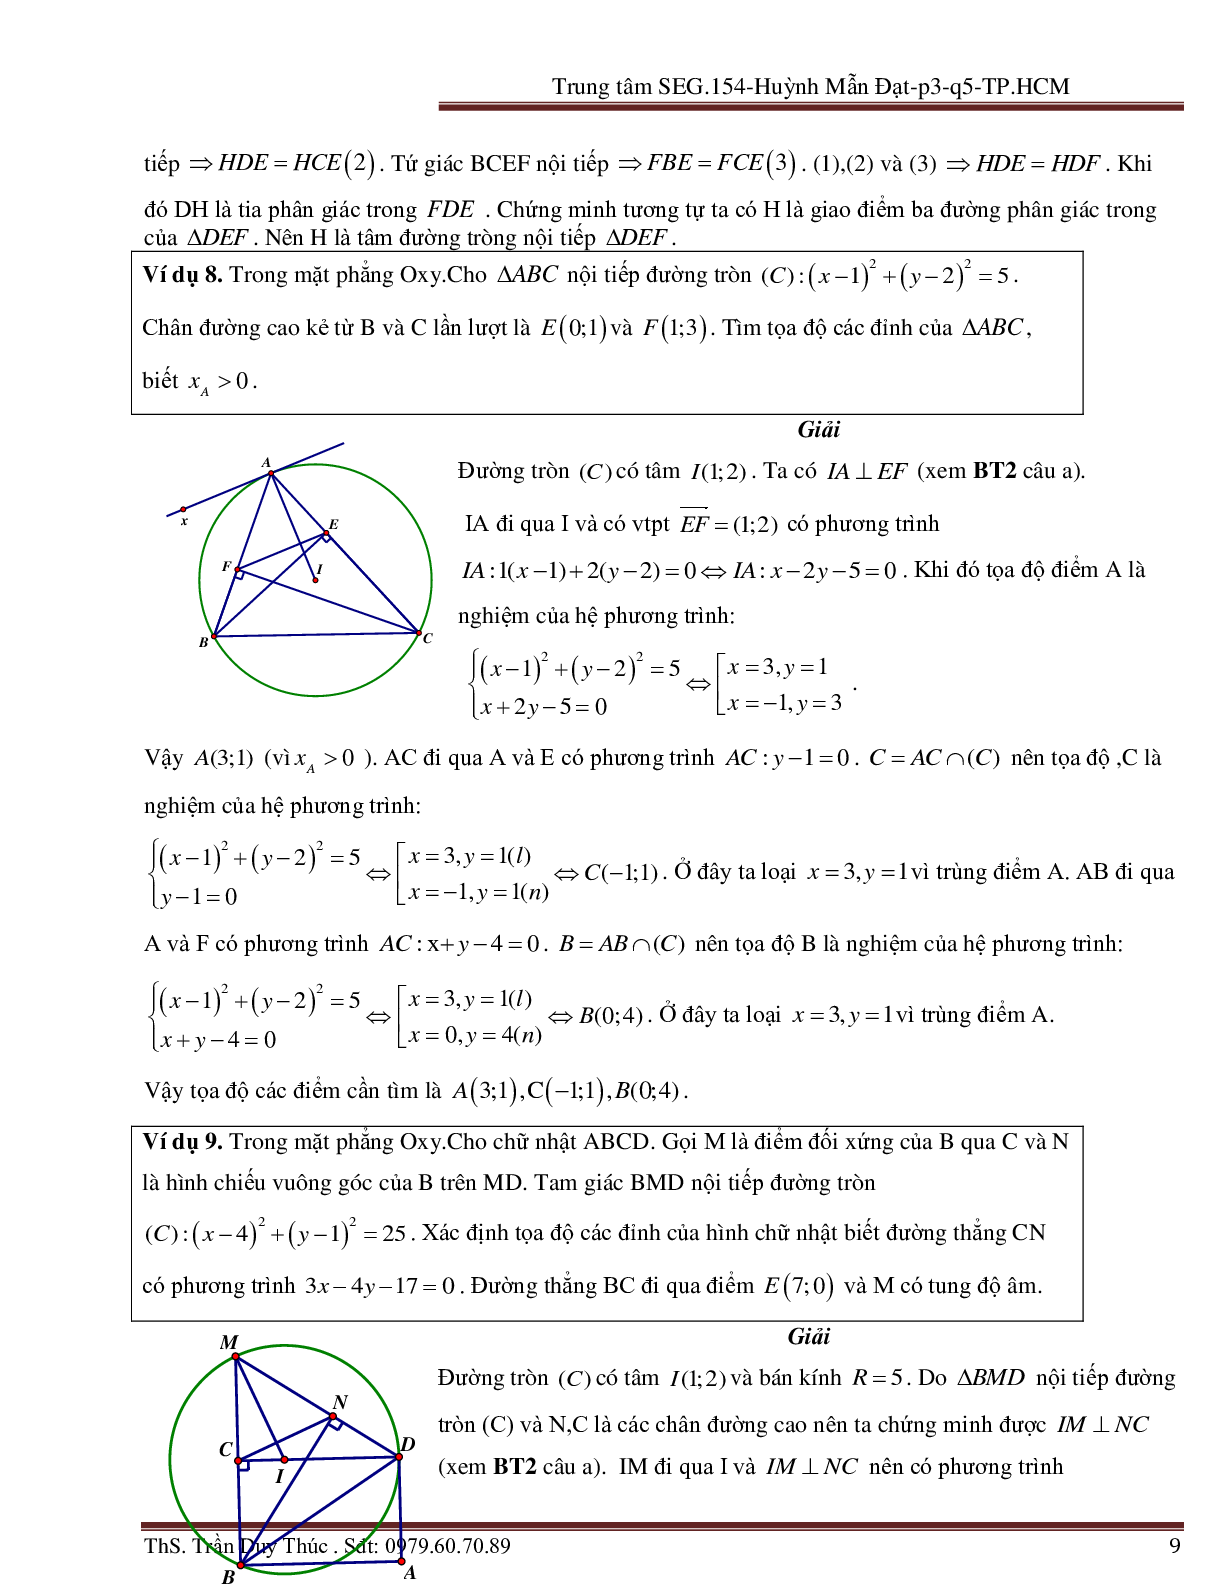 Vận dụng tính chất hình phẳng để giải bài toán Oxy liên quan đến đường tròn (trang 9)